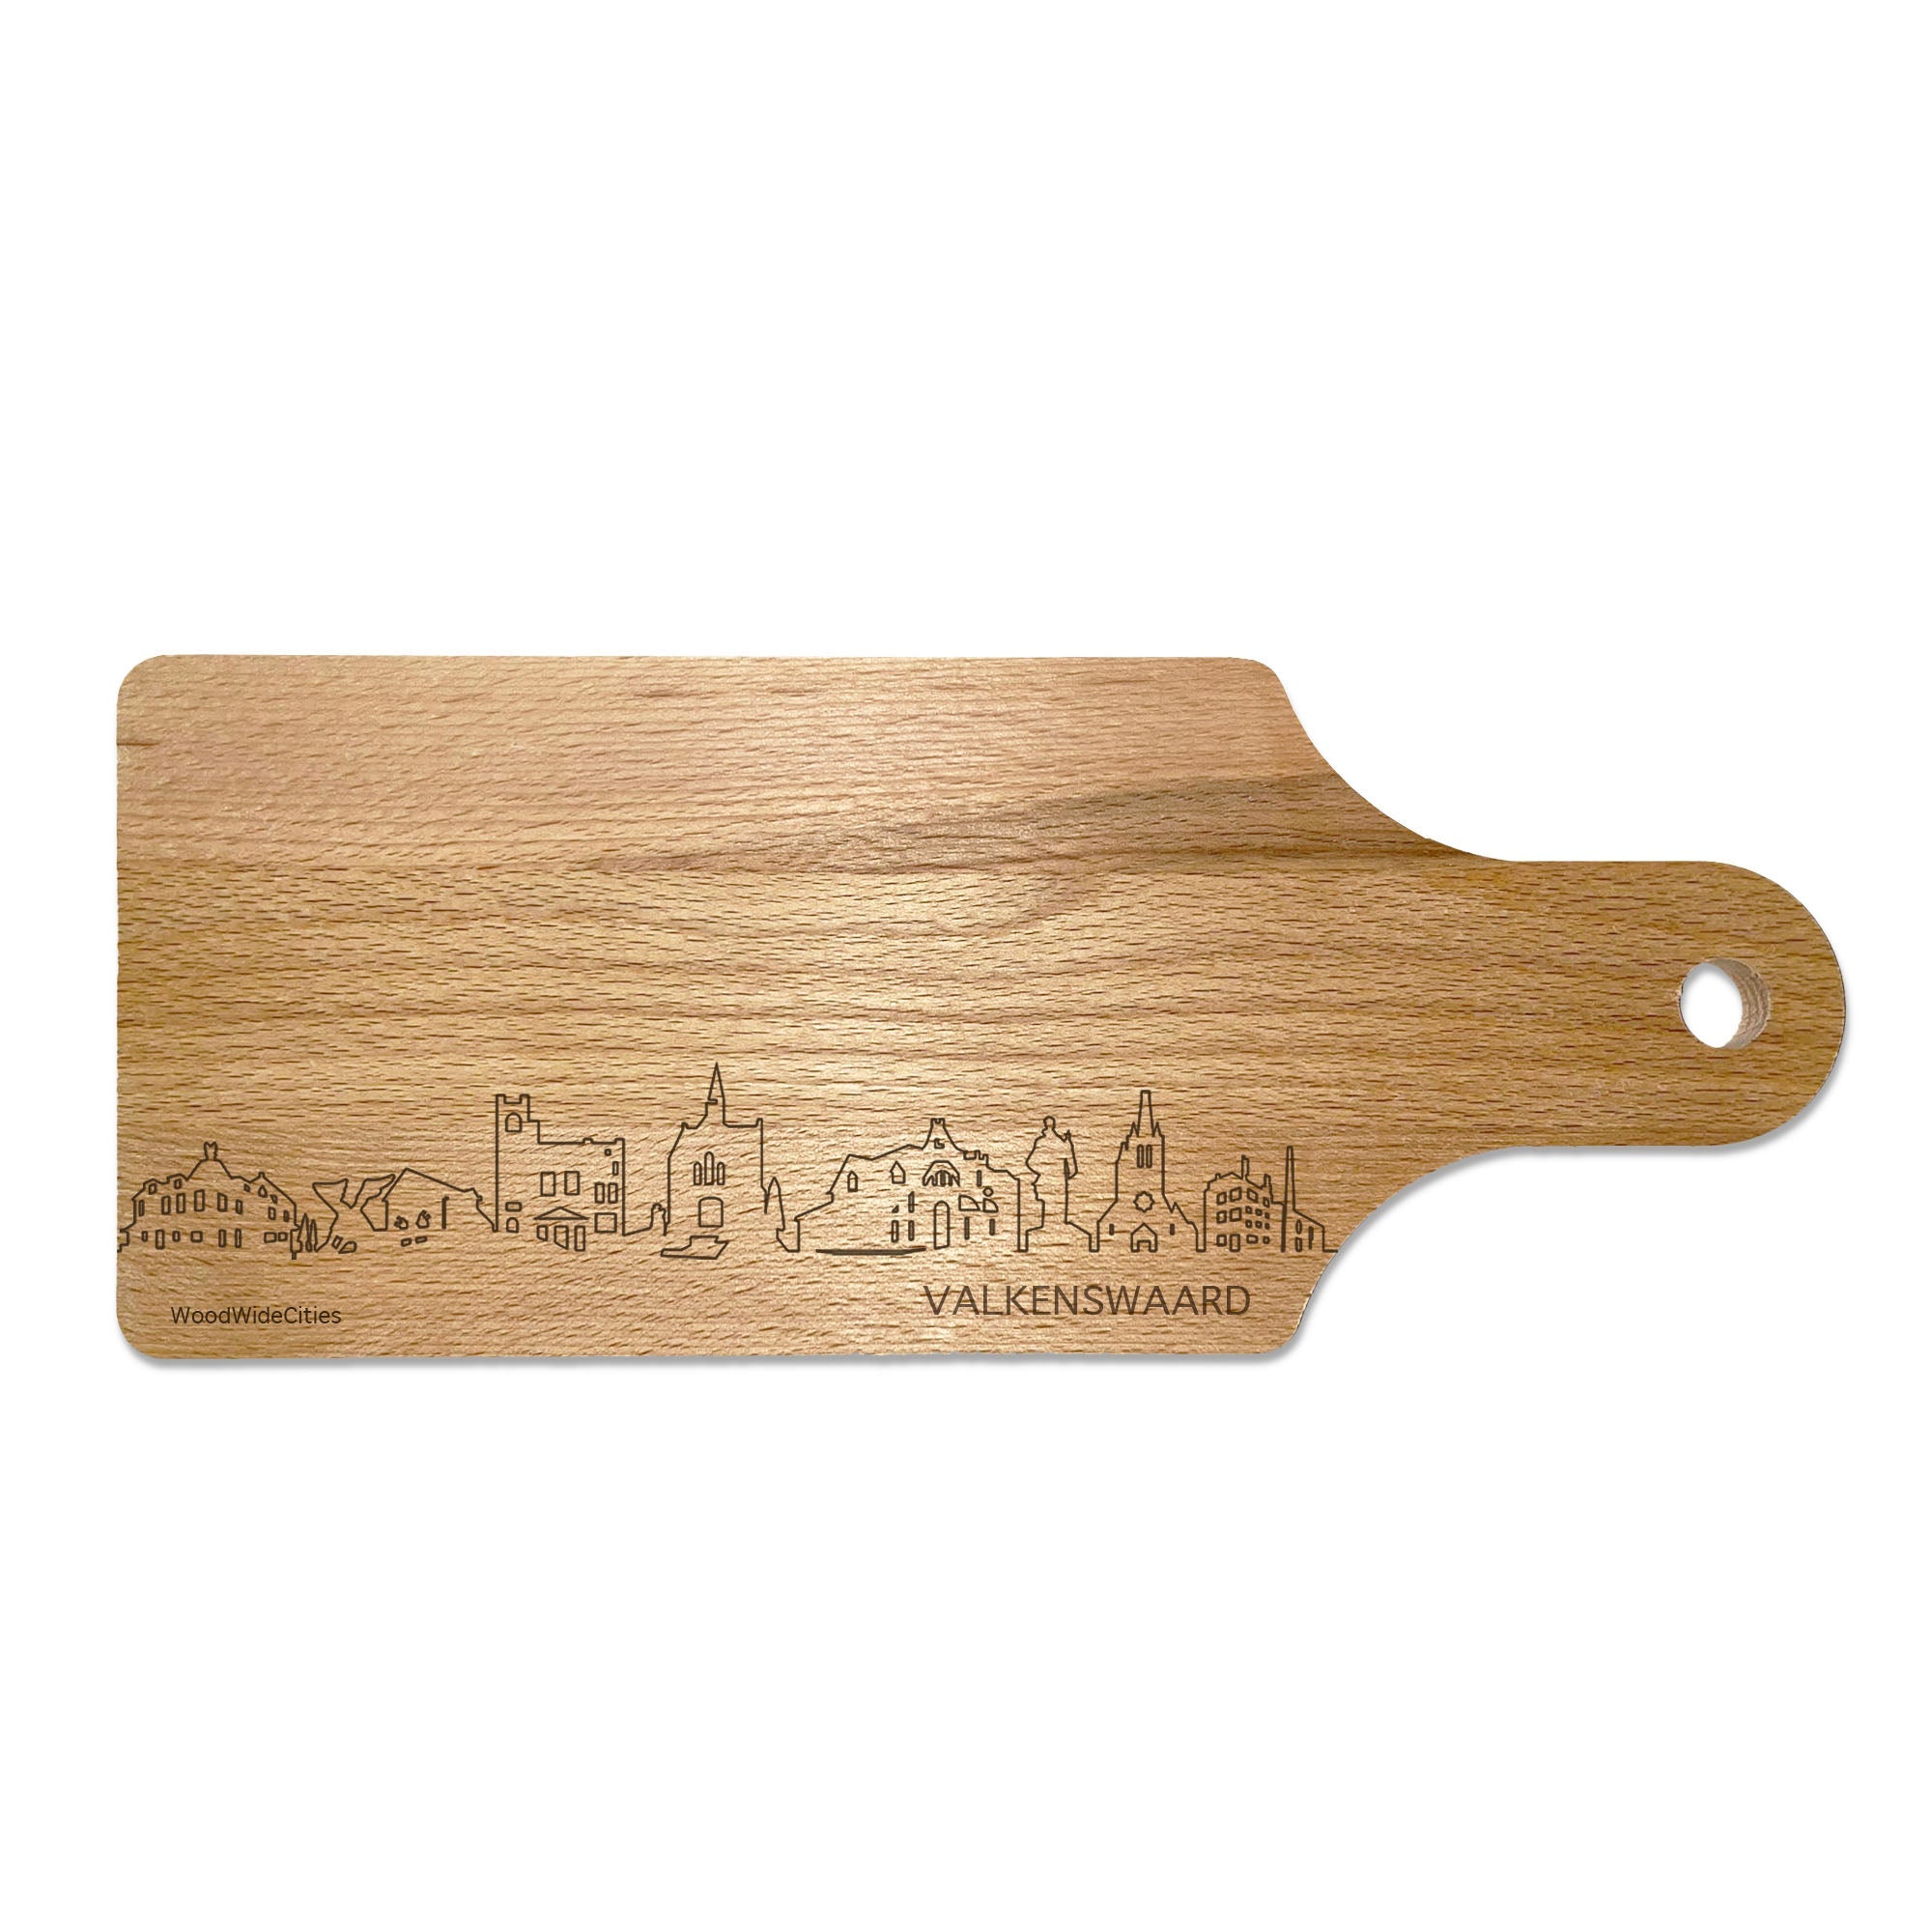 Skyline Borrelplank Valkenswaard houten cadeau decoratie relatiegeschenk van WoodWideCities